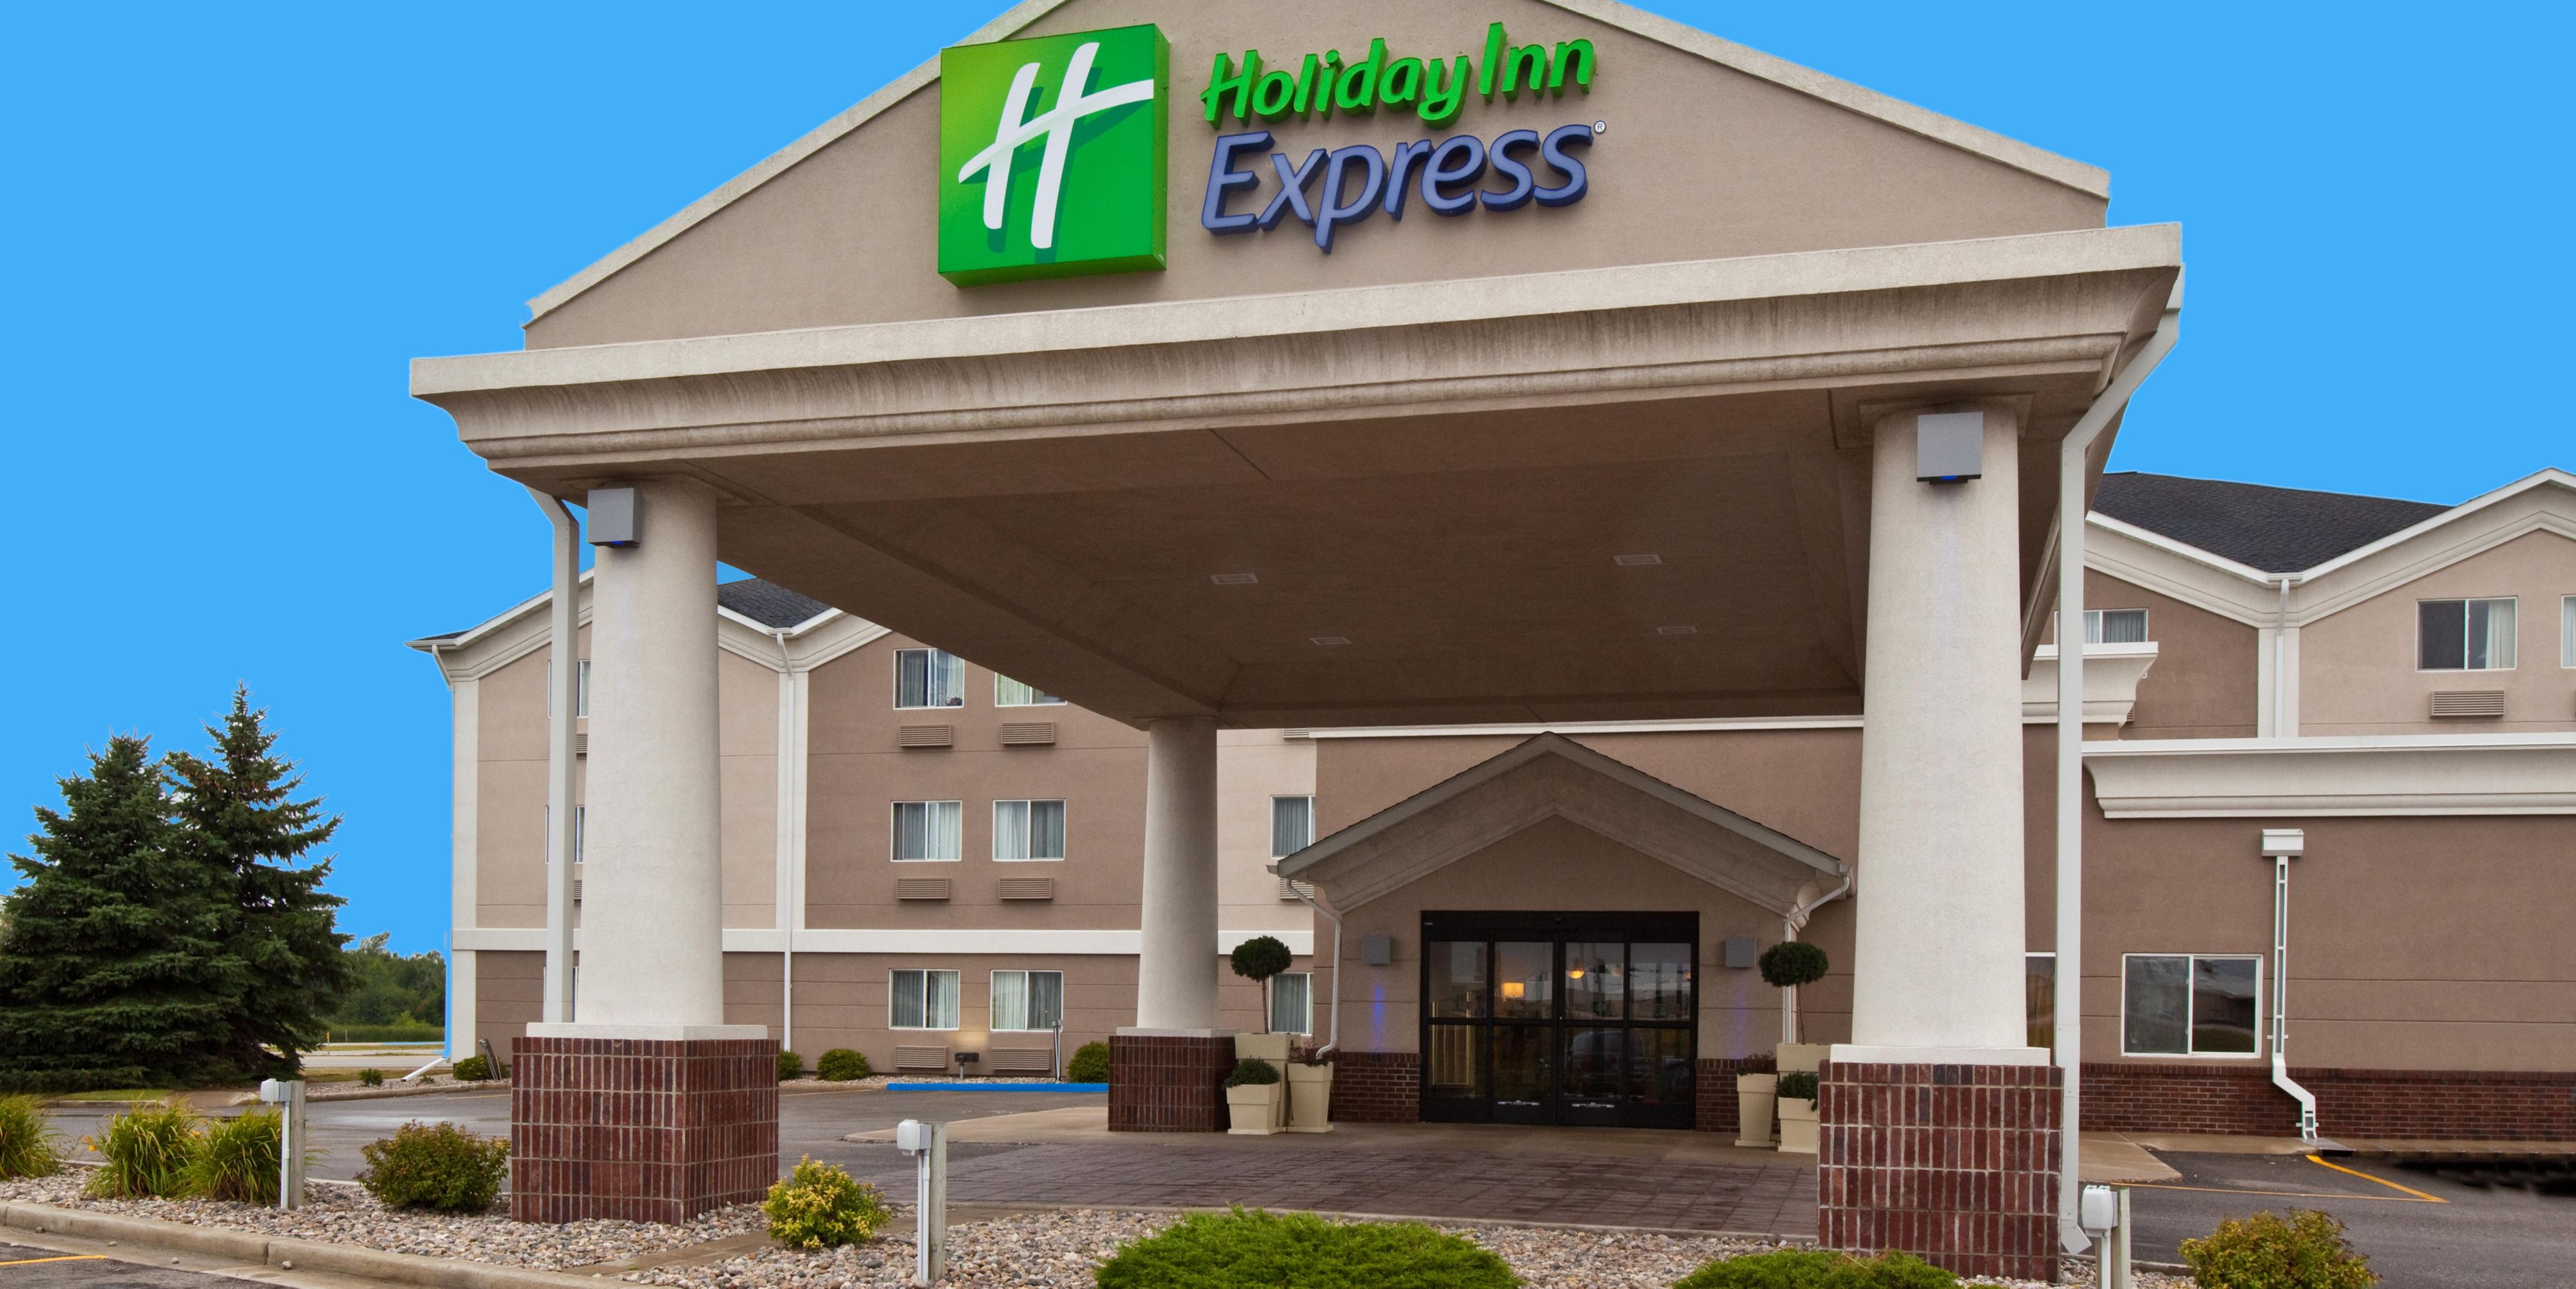 Holiday Inn Express Jamestown 4276042051 2x1?size=700,0